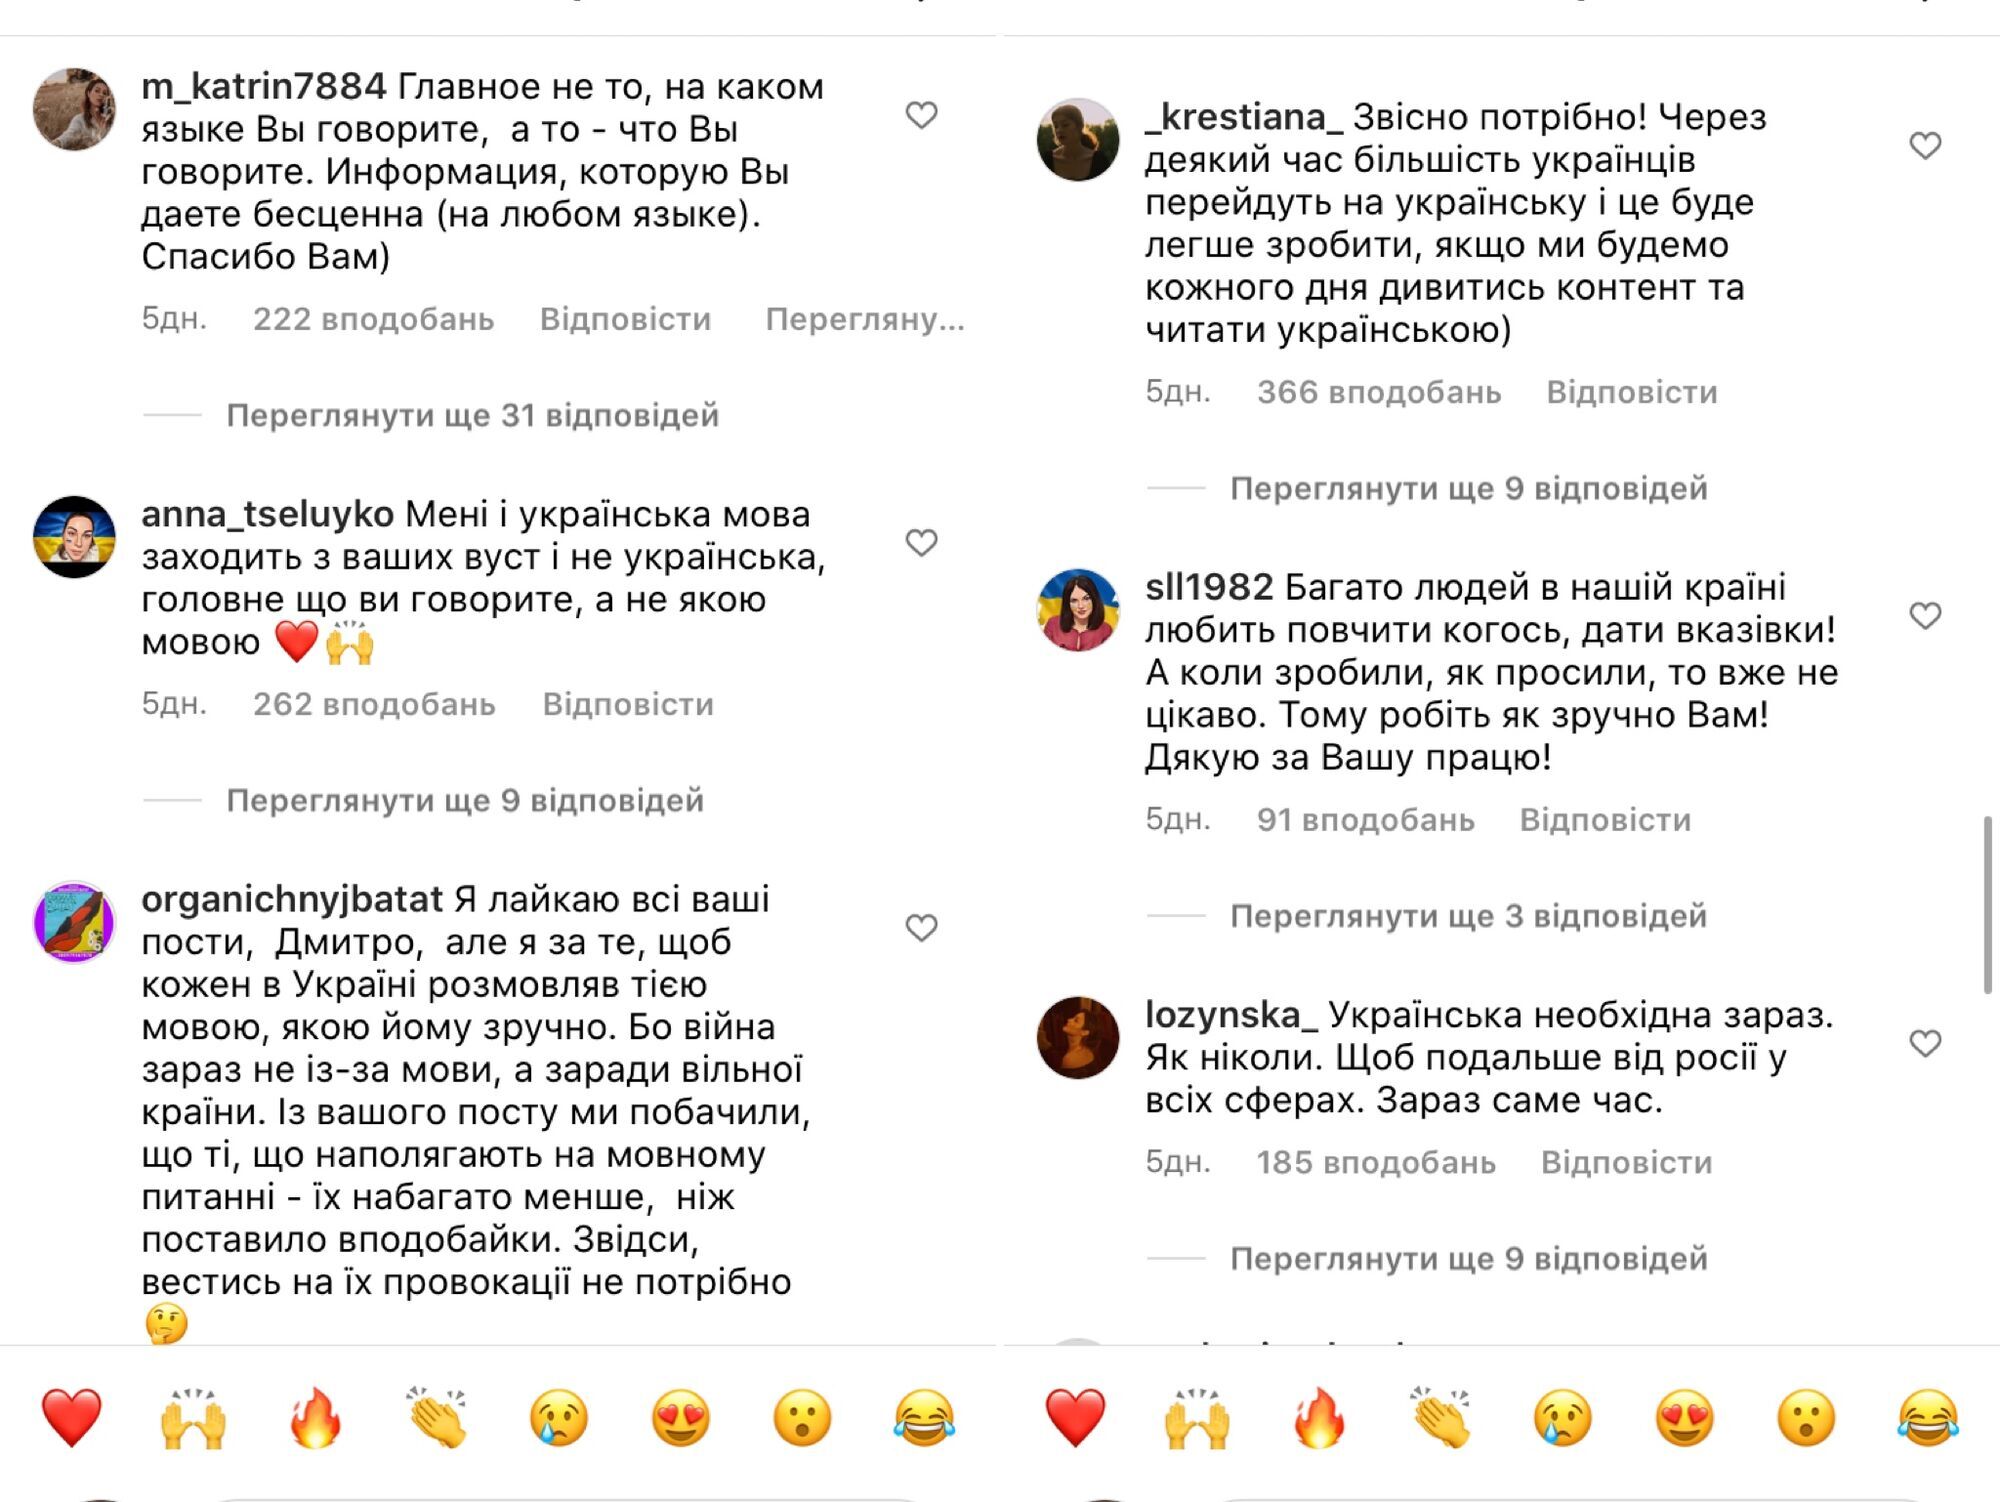 Дмитро Карпачов спровокував дискусію в мережі через україномовний контент: він потрібен? Чому нема вподобайок?